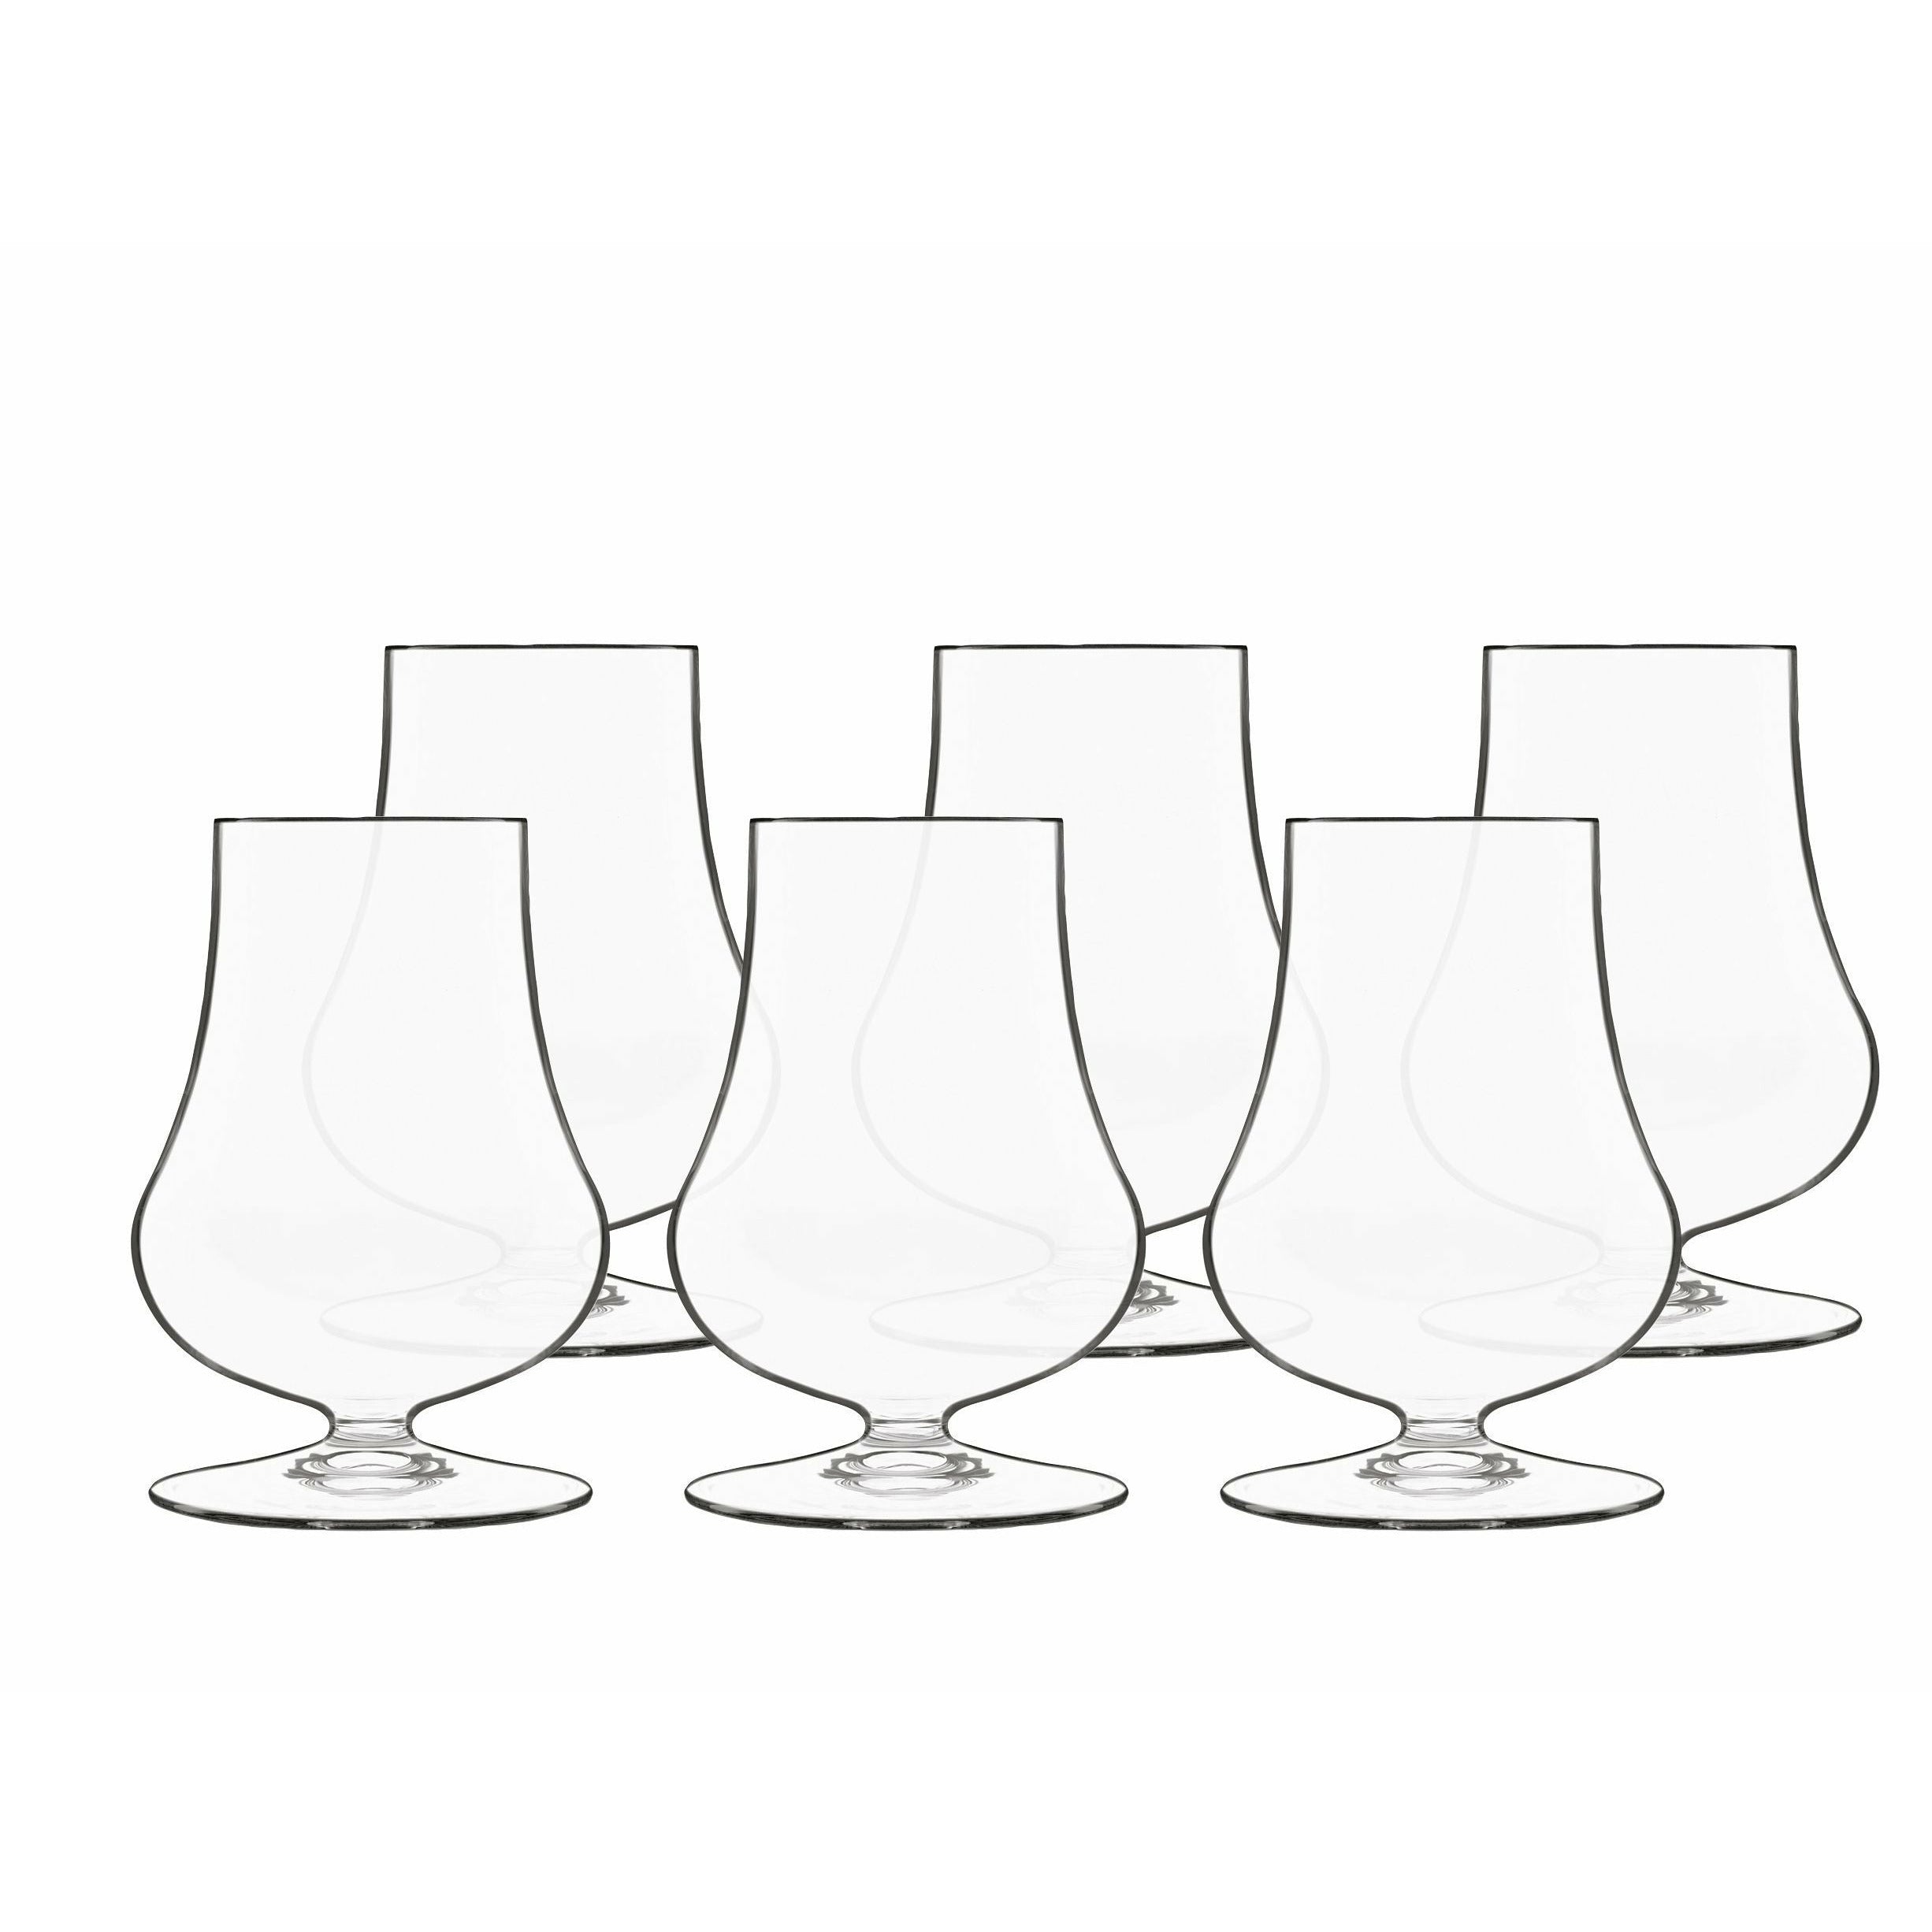 Luigi Bormioli Tentazioni Spirits Glass/Whisky Glass To Taste, Set Of 6